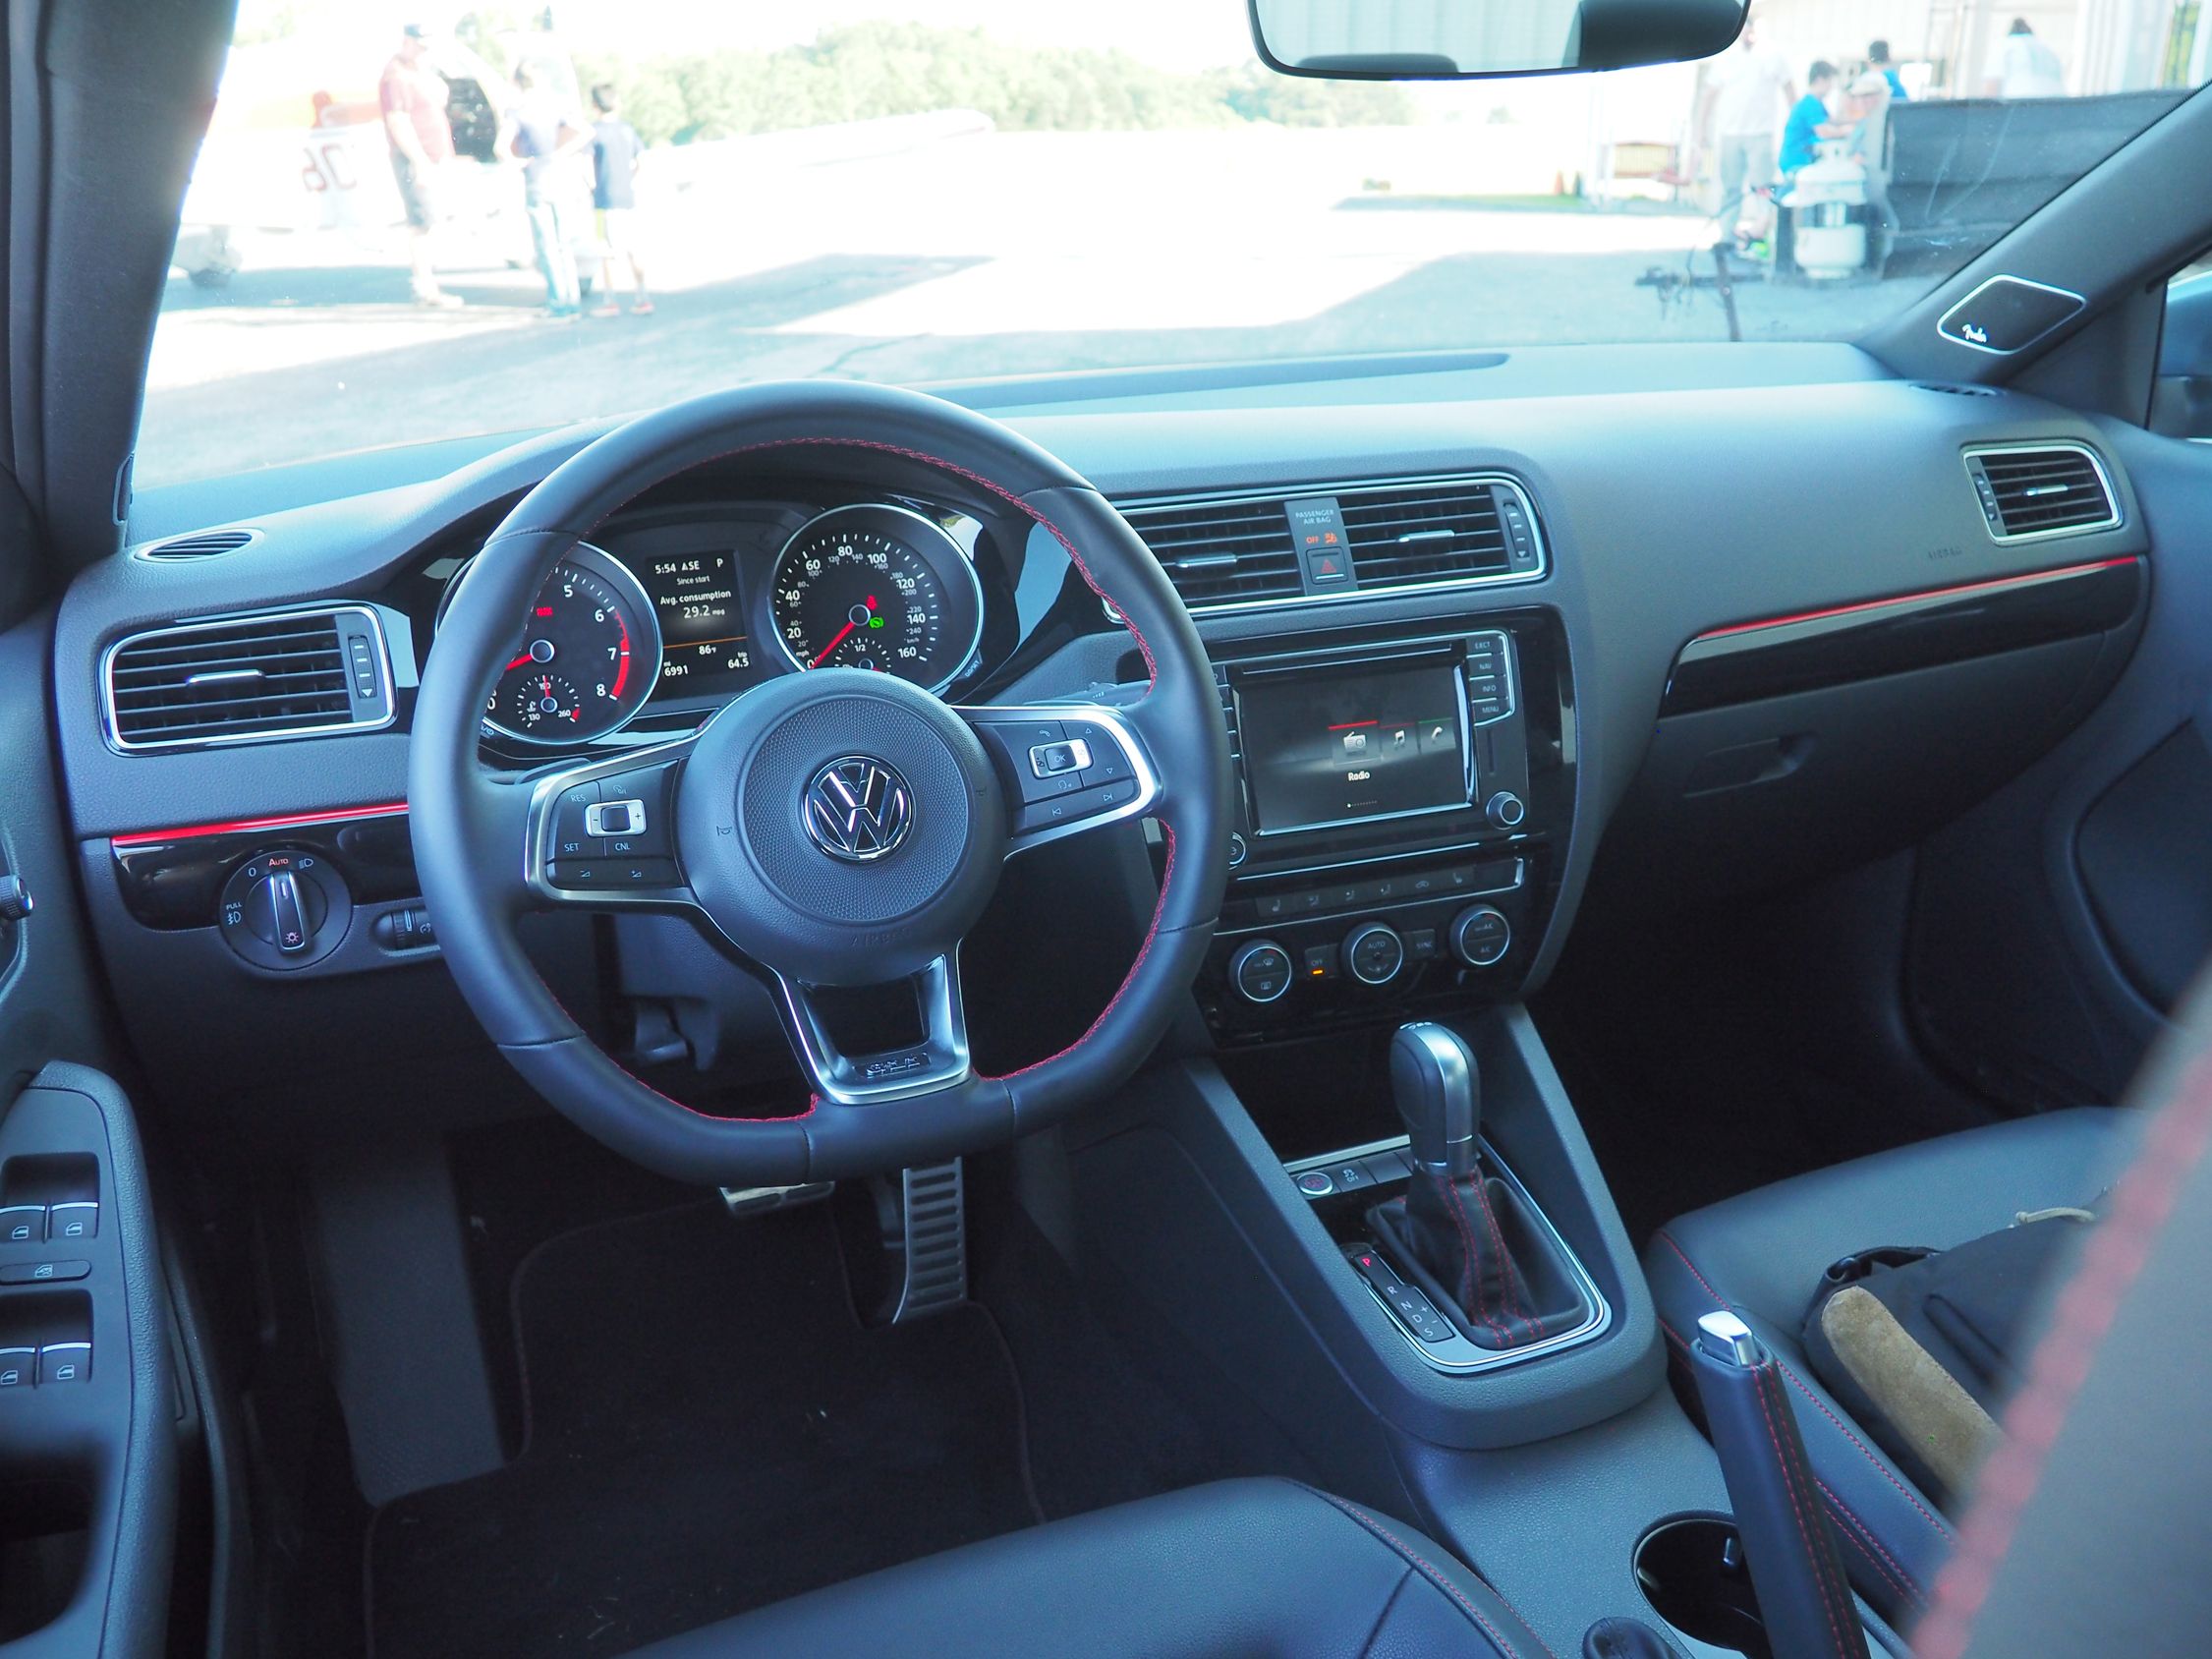 2017 Volkswagen GLI - Driven